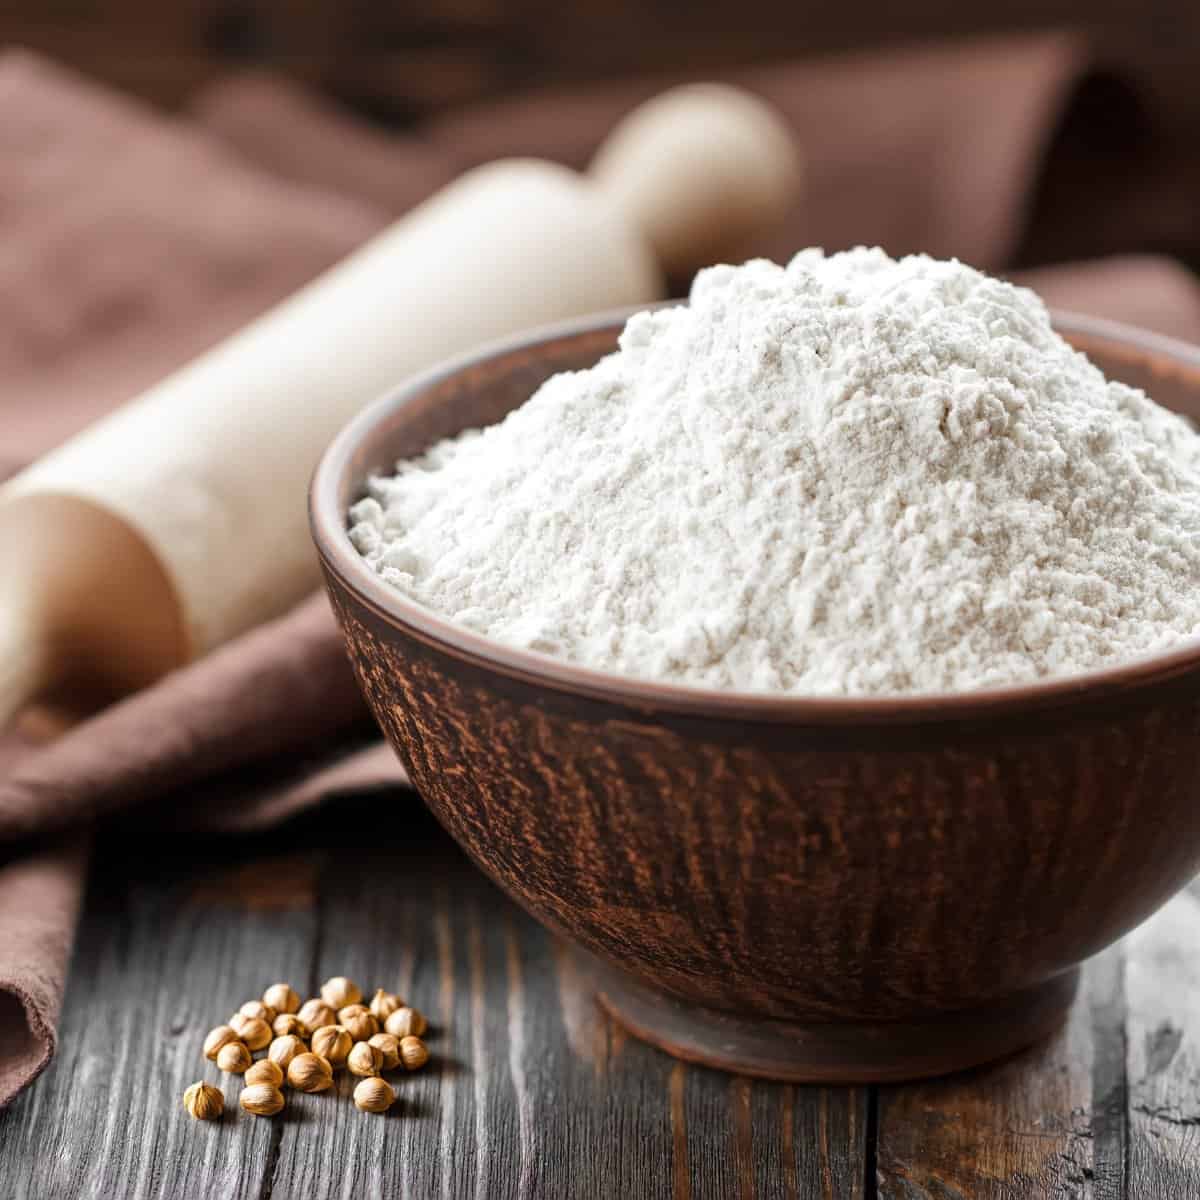 What is hazelnut flour